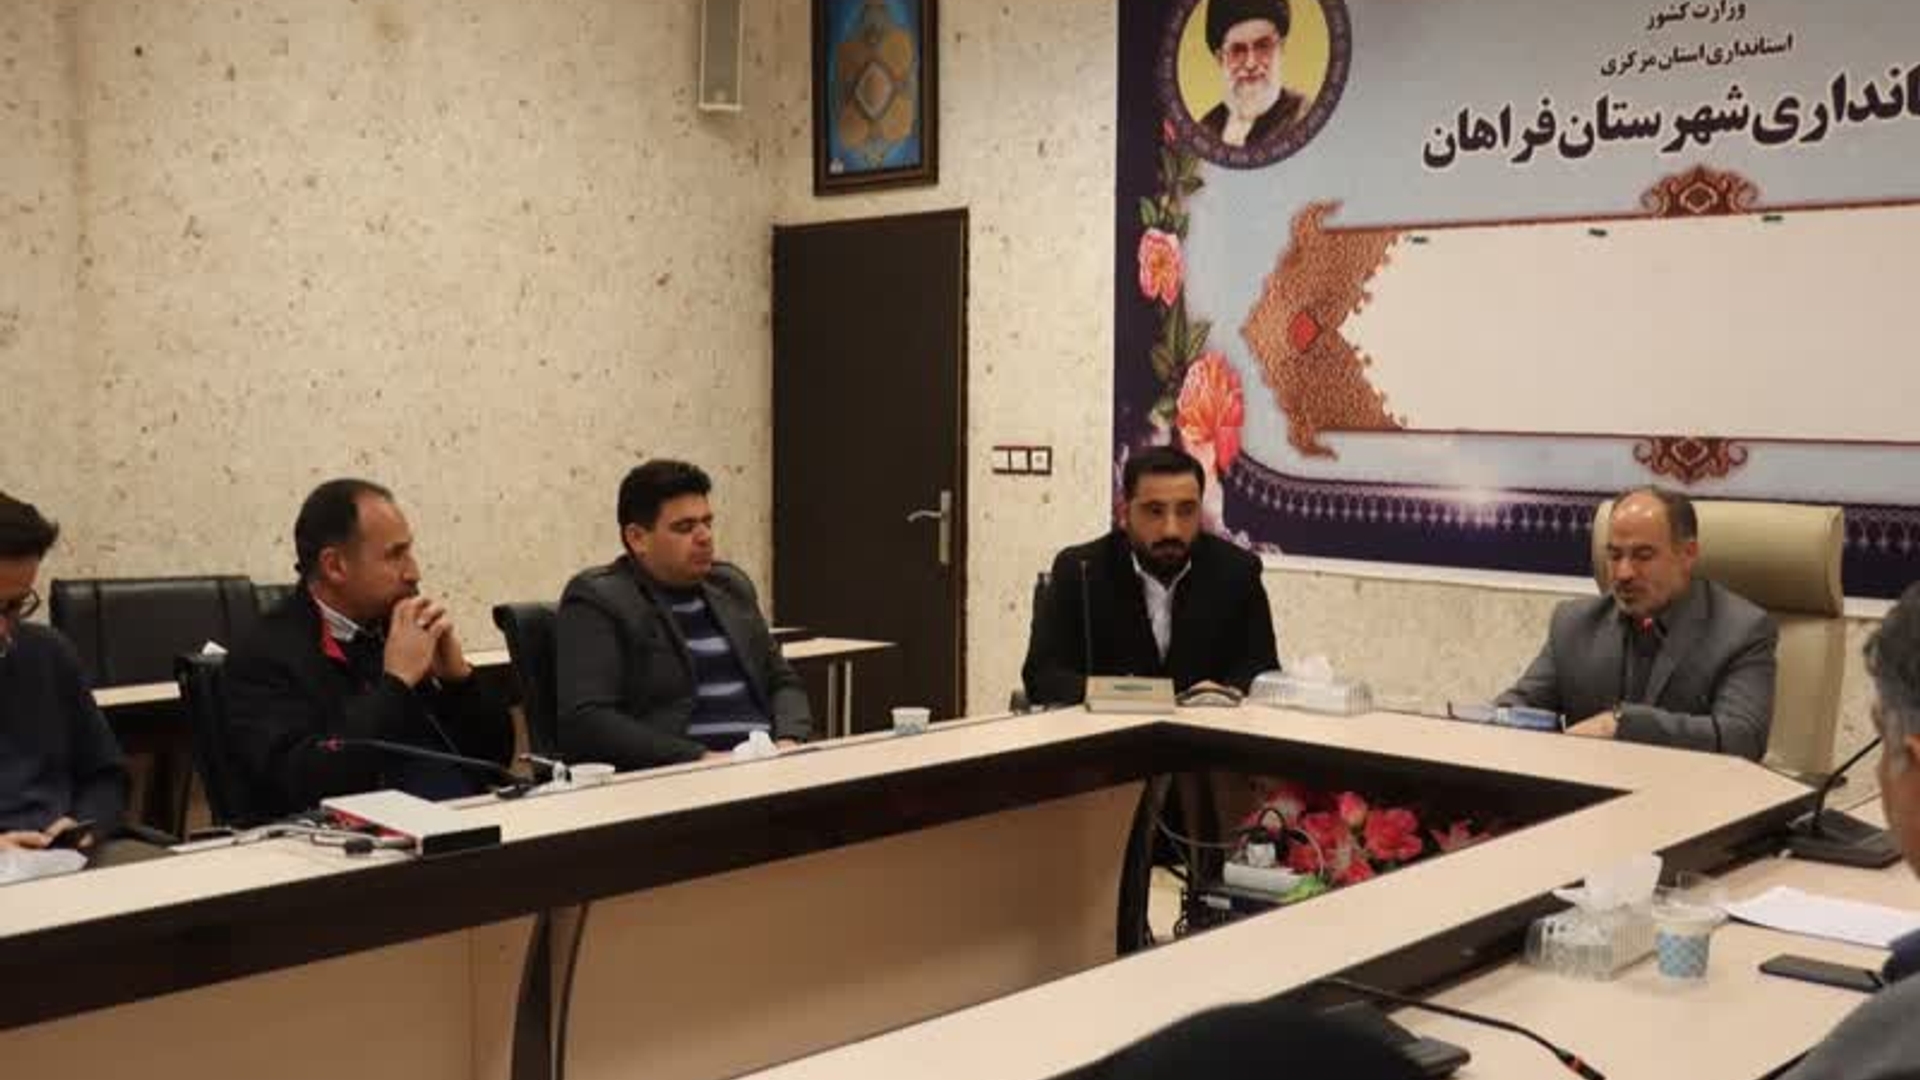 نشست مسئولین روابط عمومی دستگاههای اجرایی، خبرگزاری ها و اصحاب رسانه شهرستان فراهان